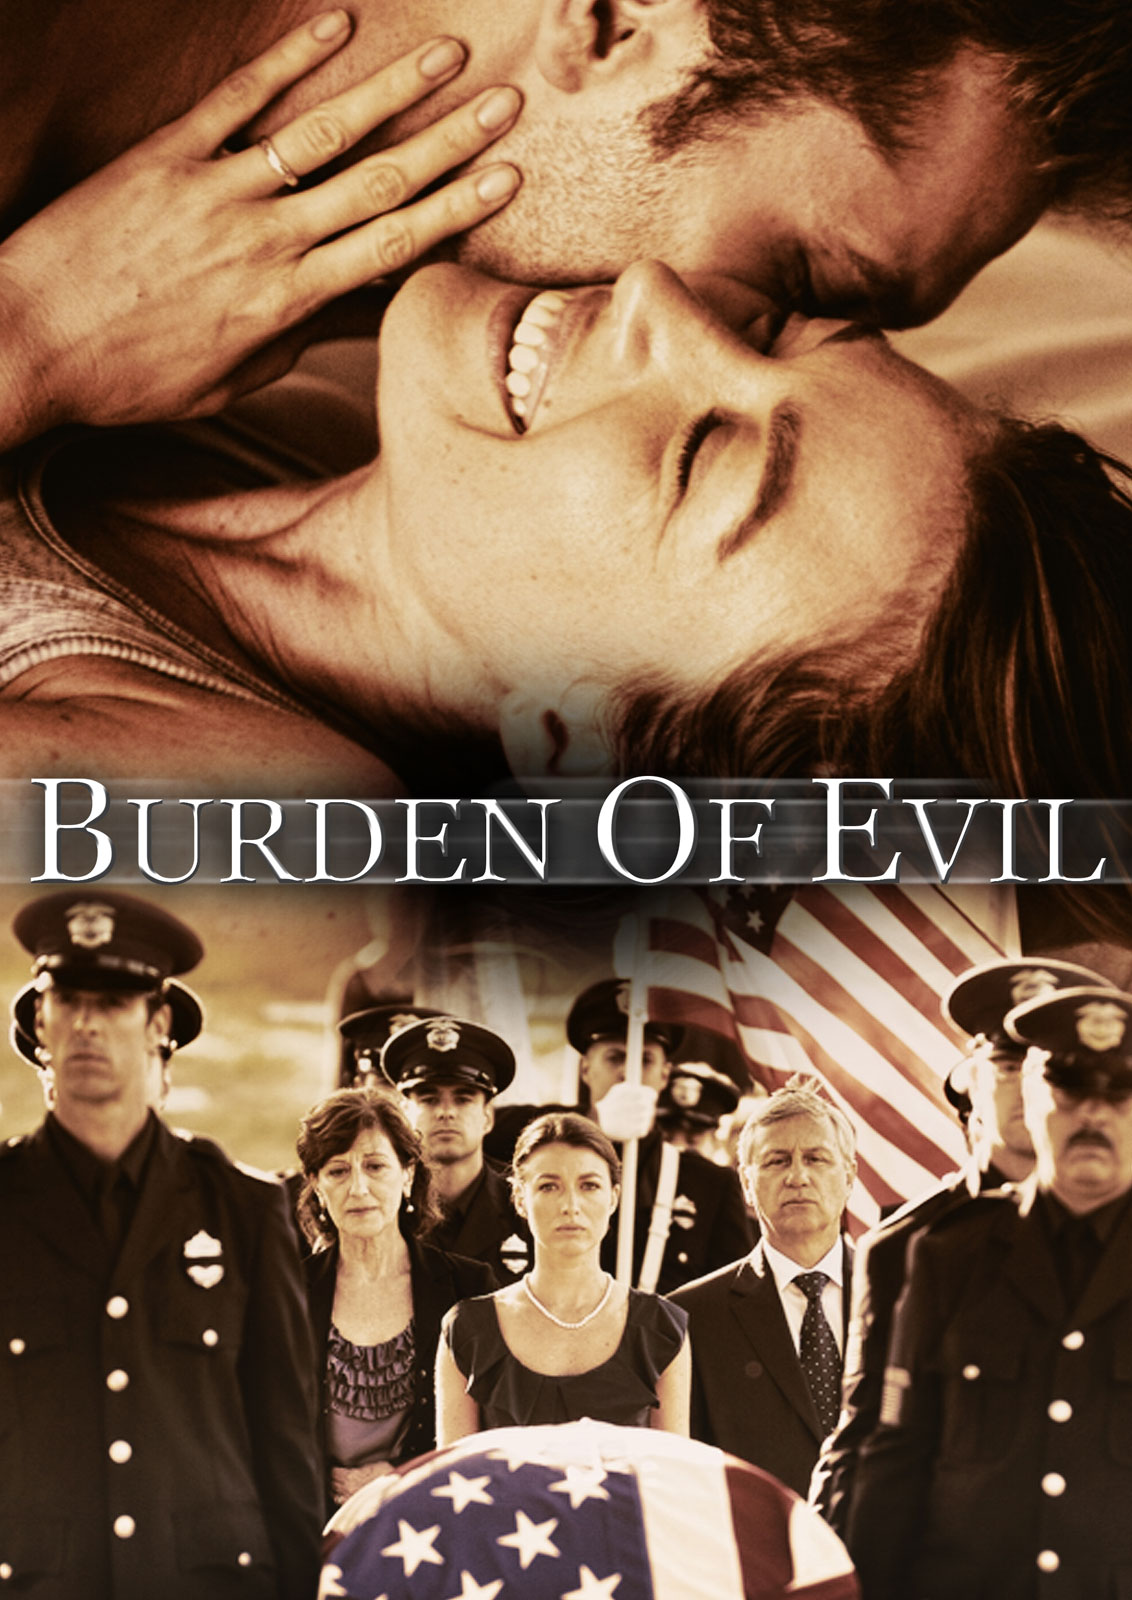 Burden of Evil (2012) Screenshot 5